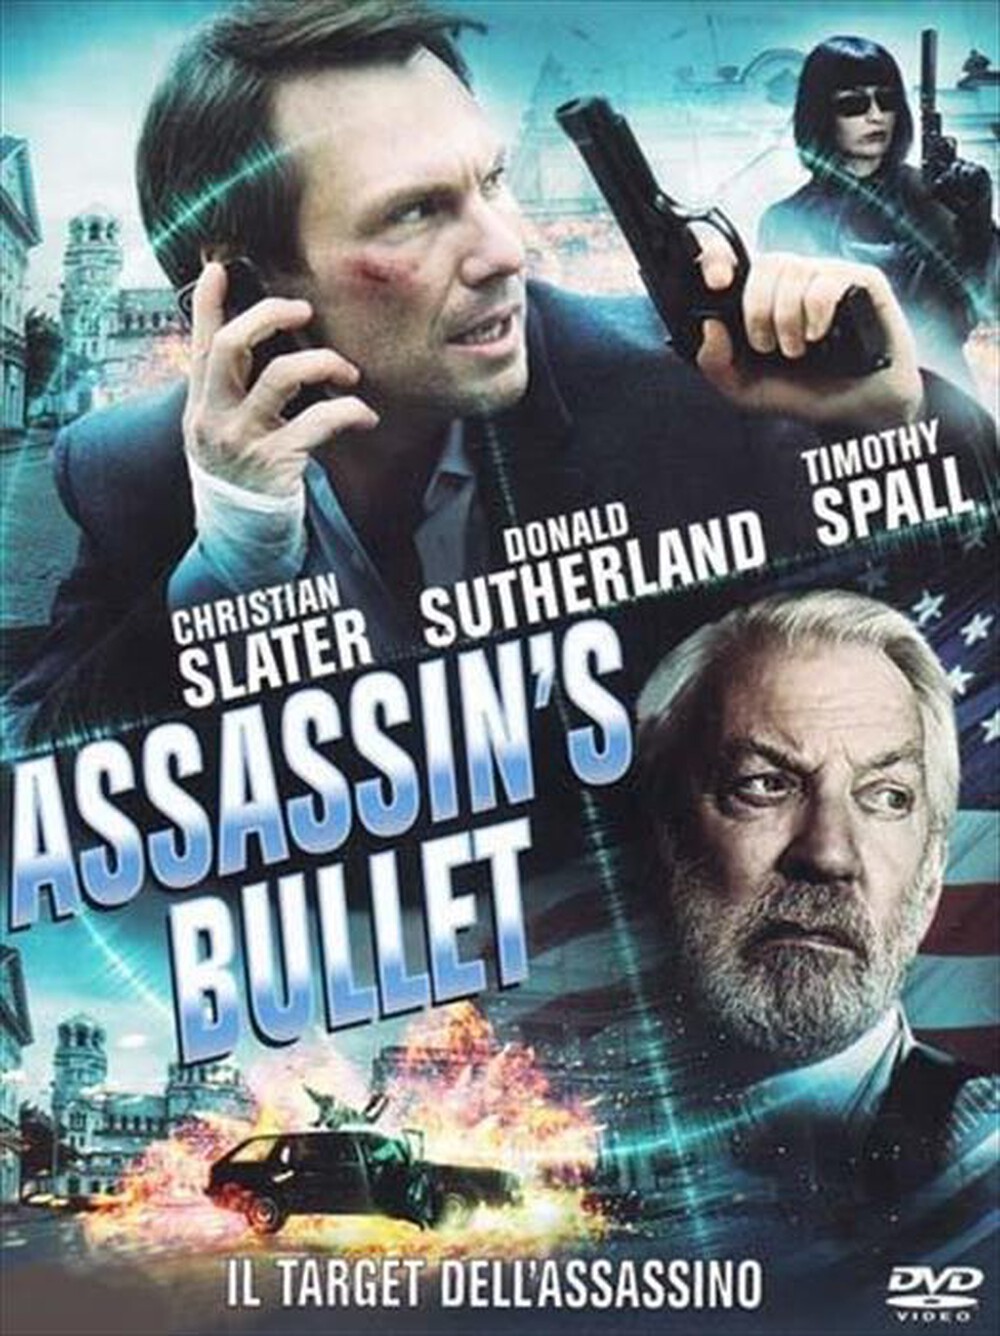 "CULT MEDIA - Assassin's Bullet - Il Target Dell'Assassino"